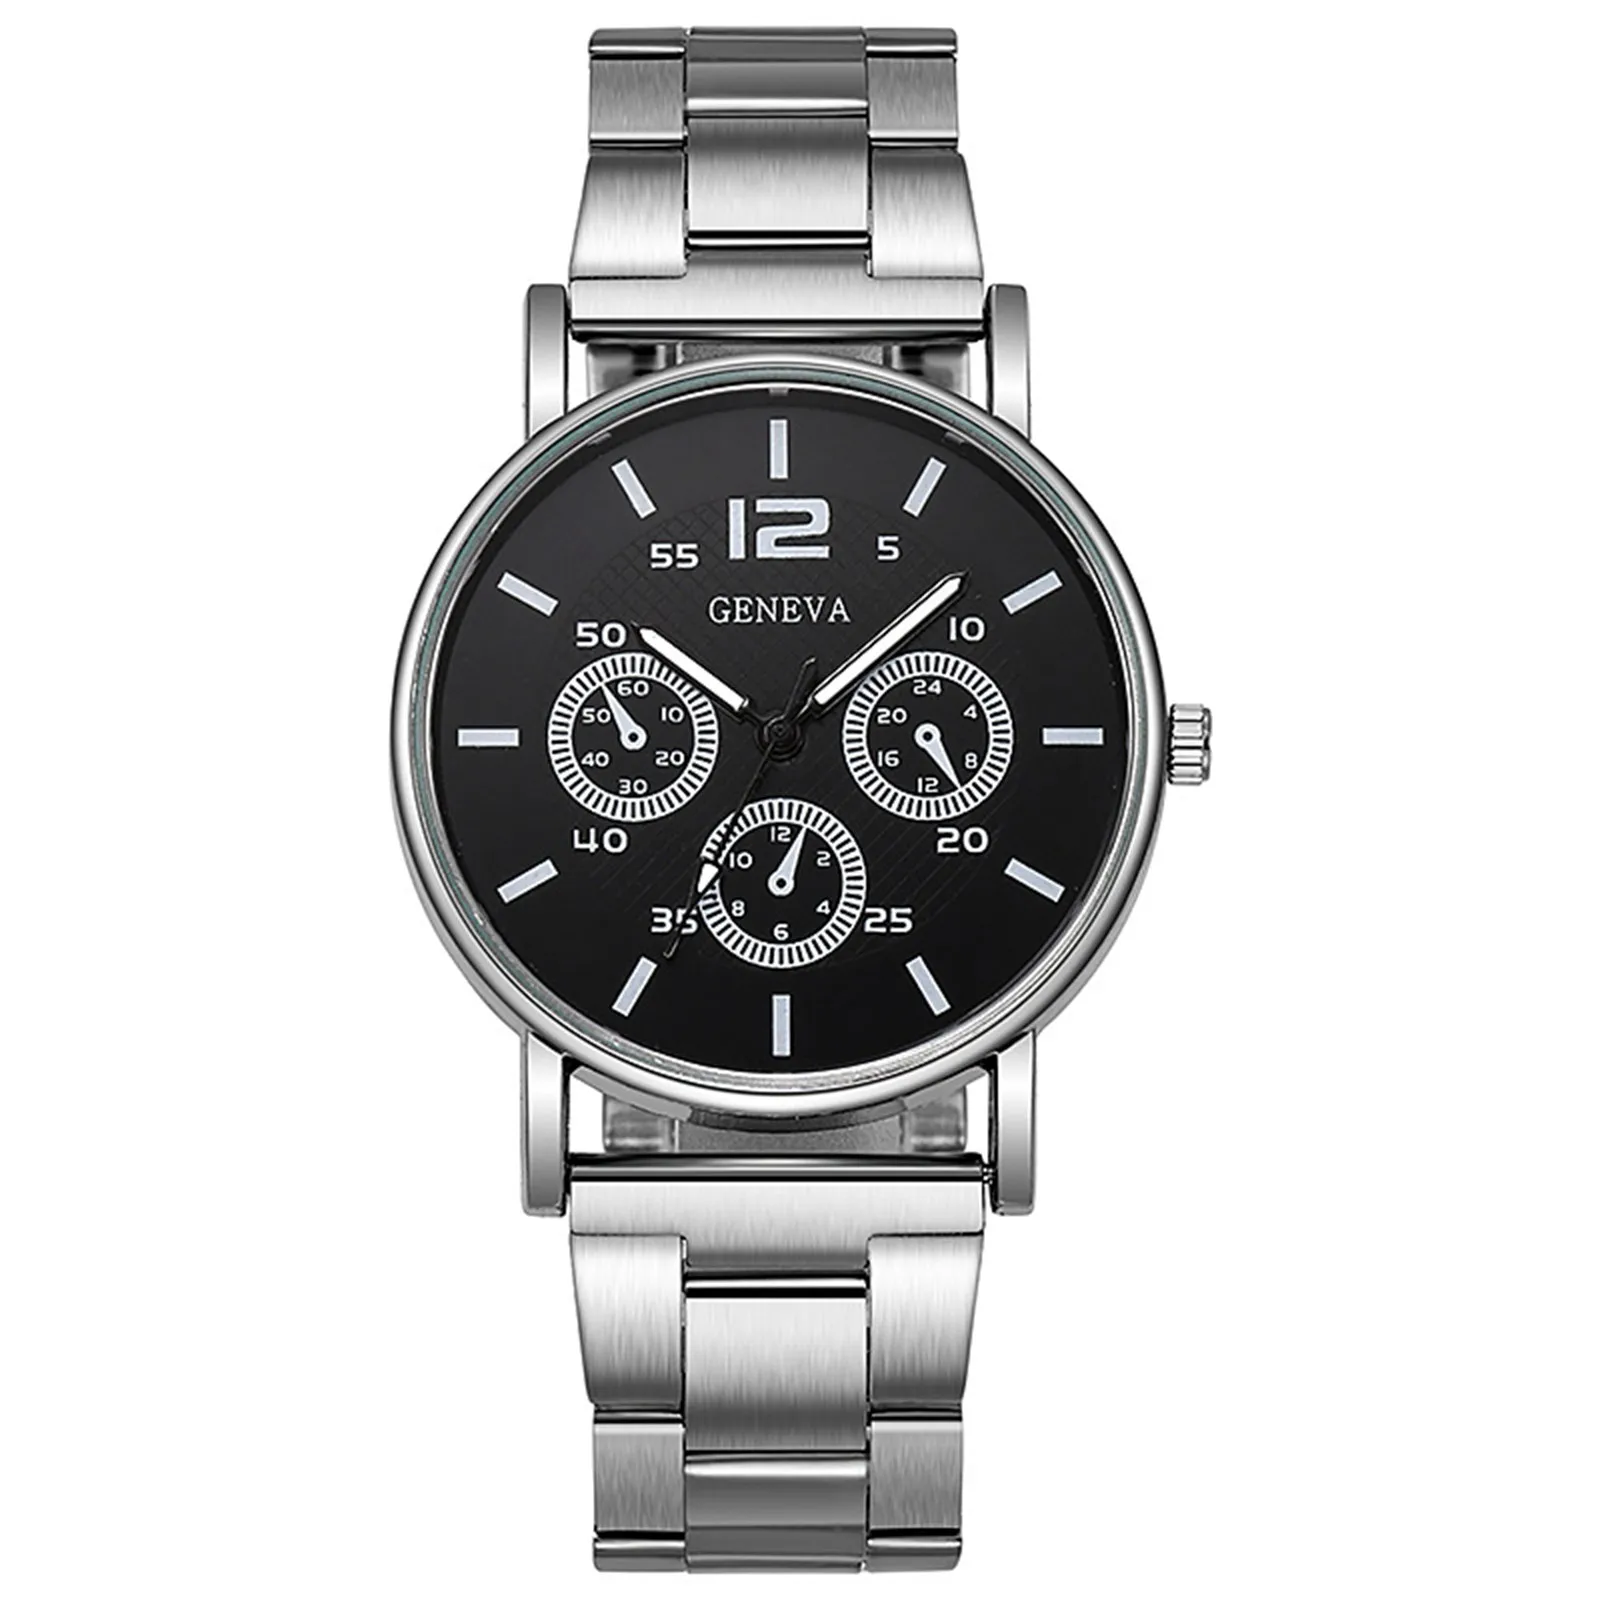 

Men's Watch Fashion Casual Watch Quartz Watch Steel Band Watch Wrist Watch montre homme luxe grande marque moda mujeres relogio